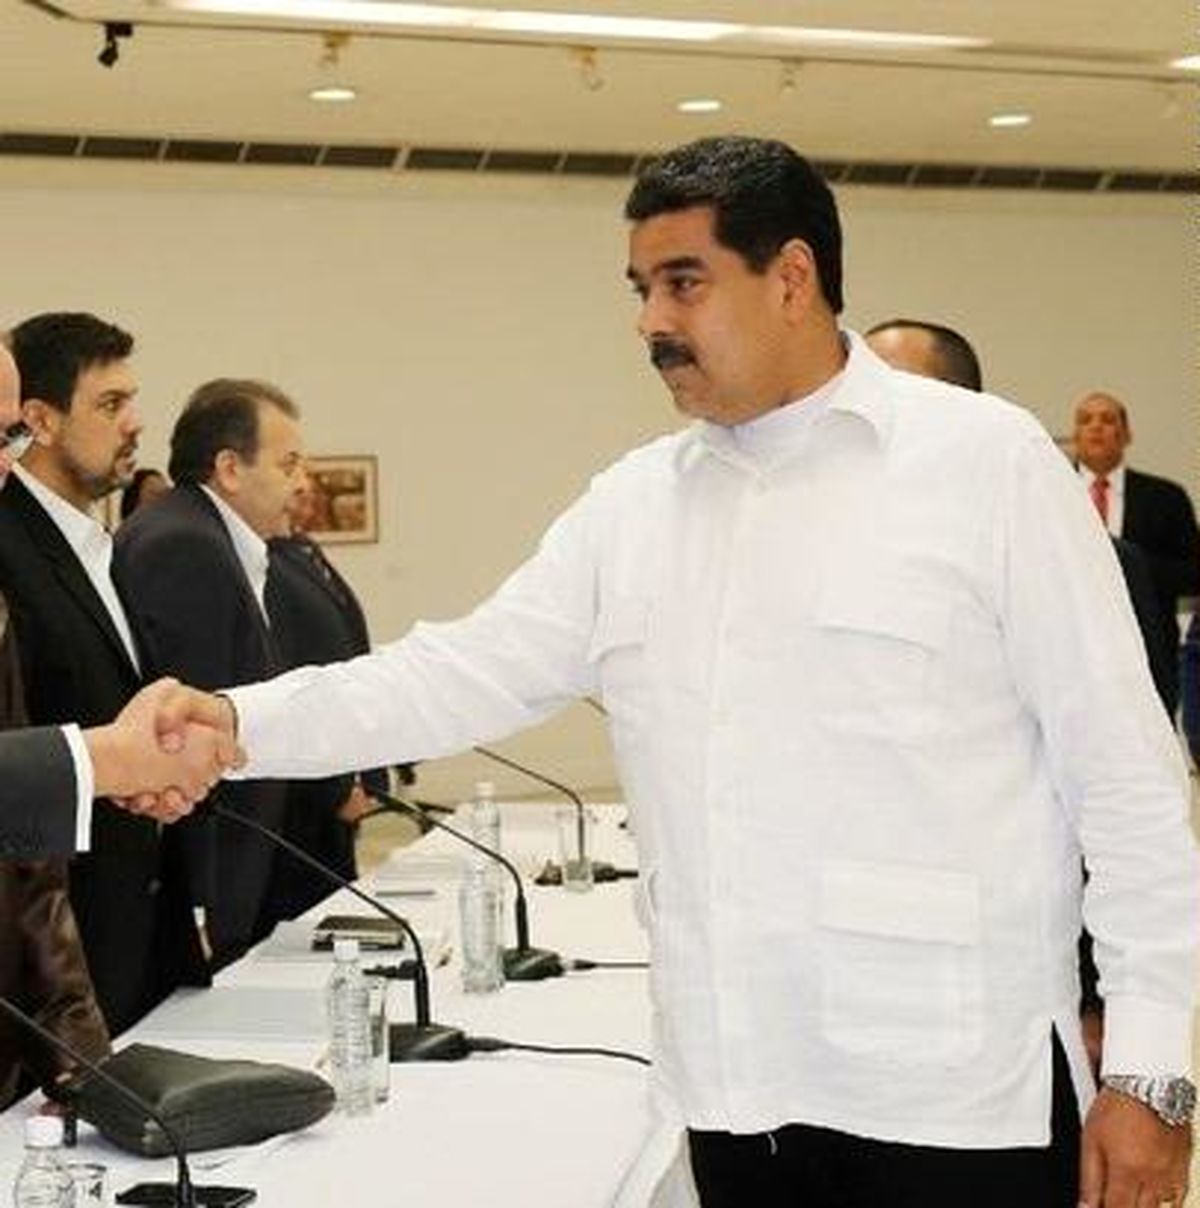 مذاکرات "ونزوئلا" آخرین فرصت برای برقراری صلح است